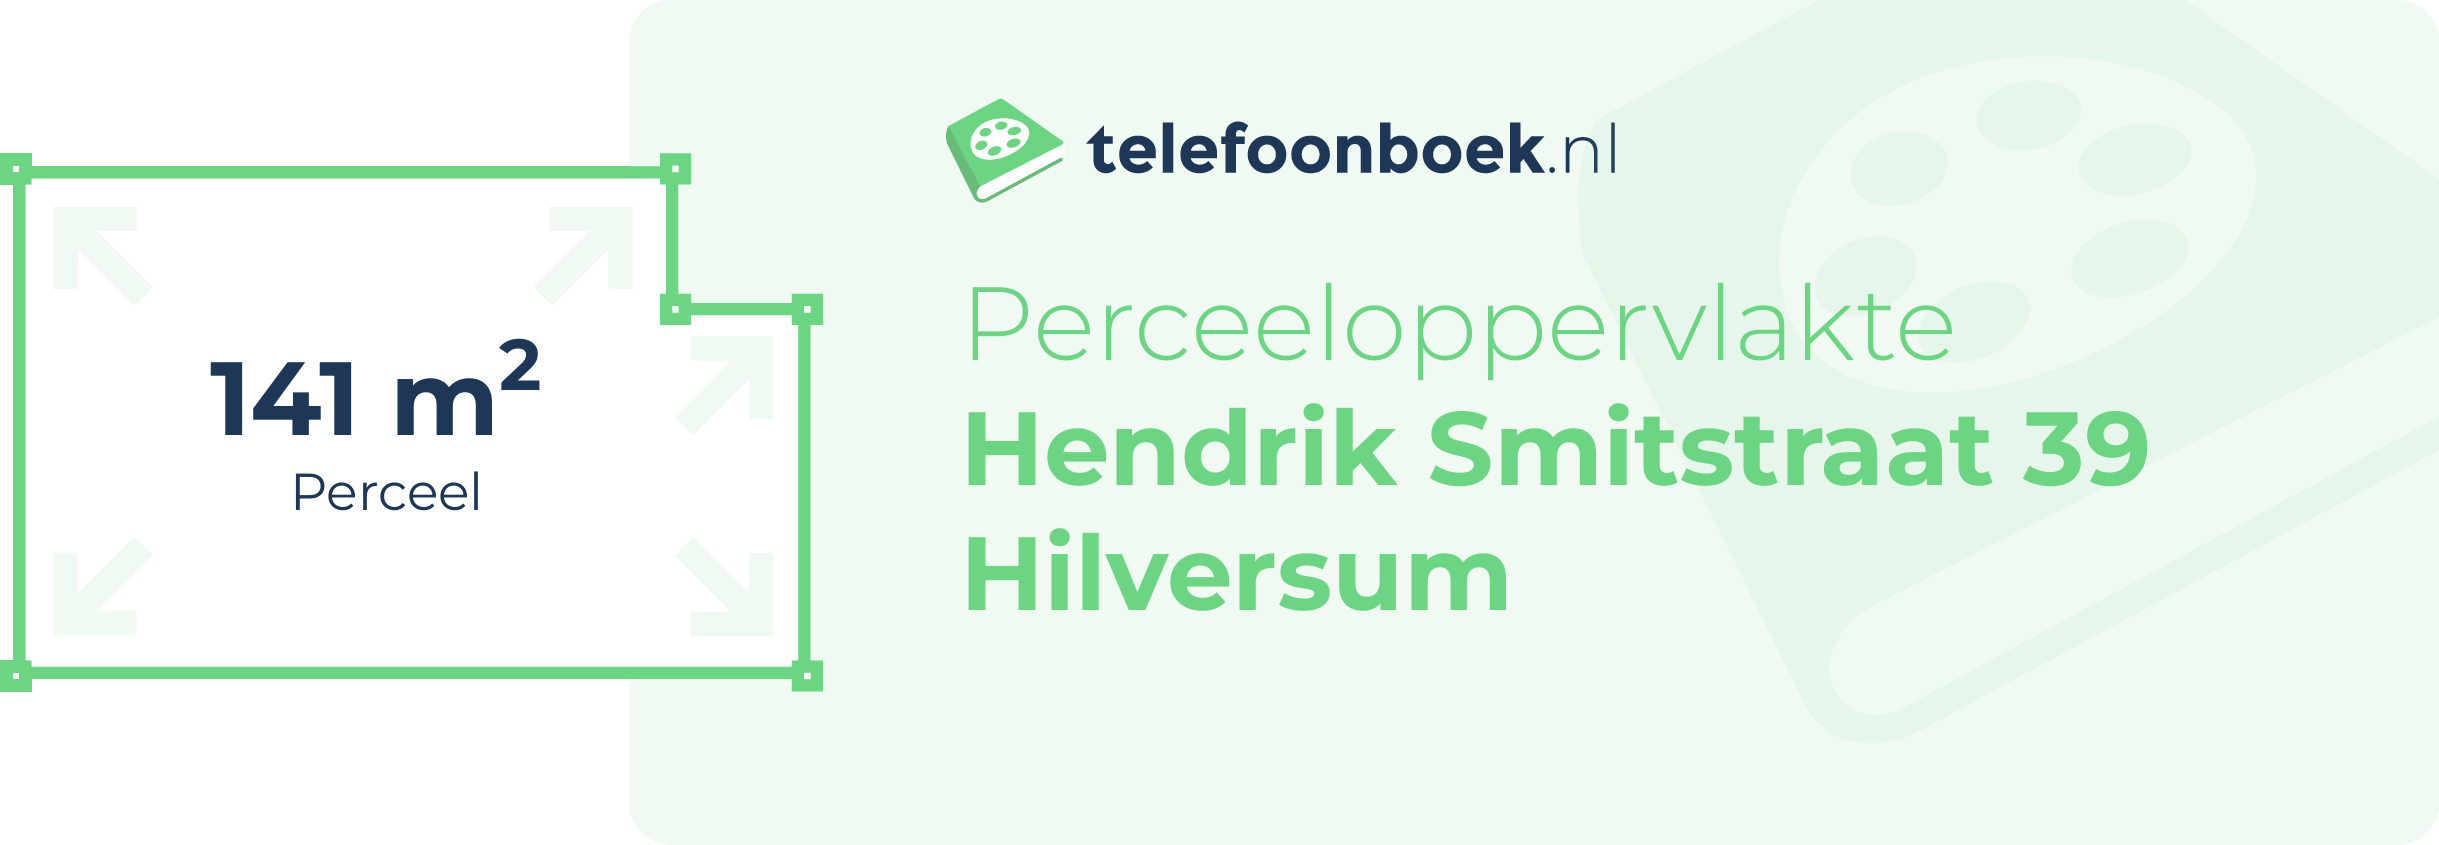 Perceeloppervlakte Hendrik Smitstraat 39 Hilversum